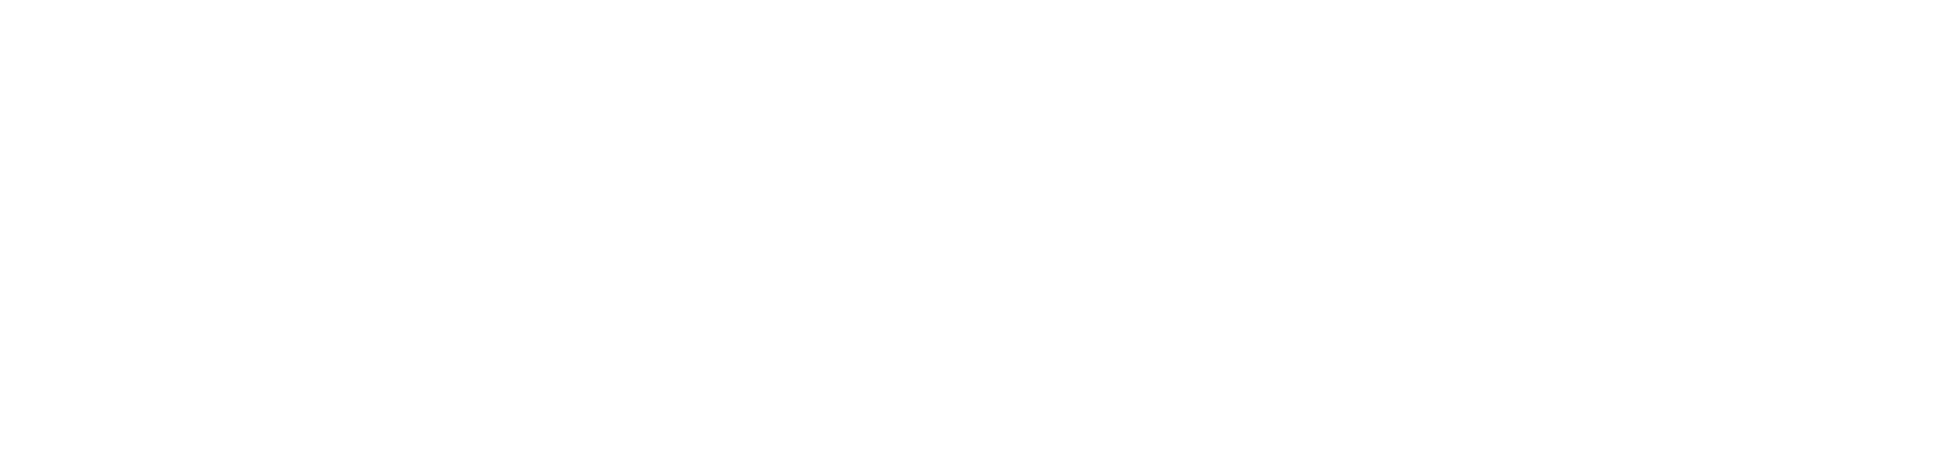 Solverita.cz